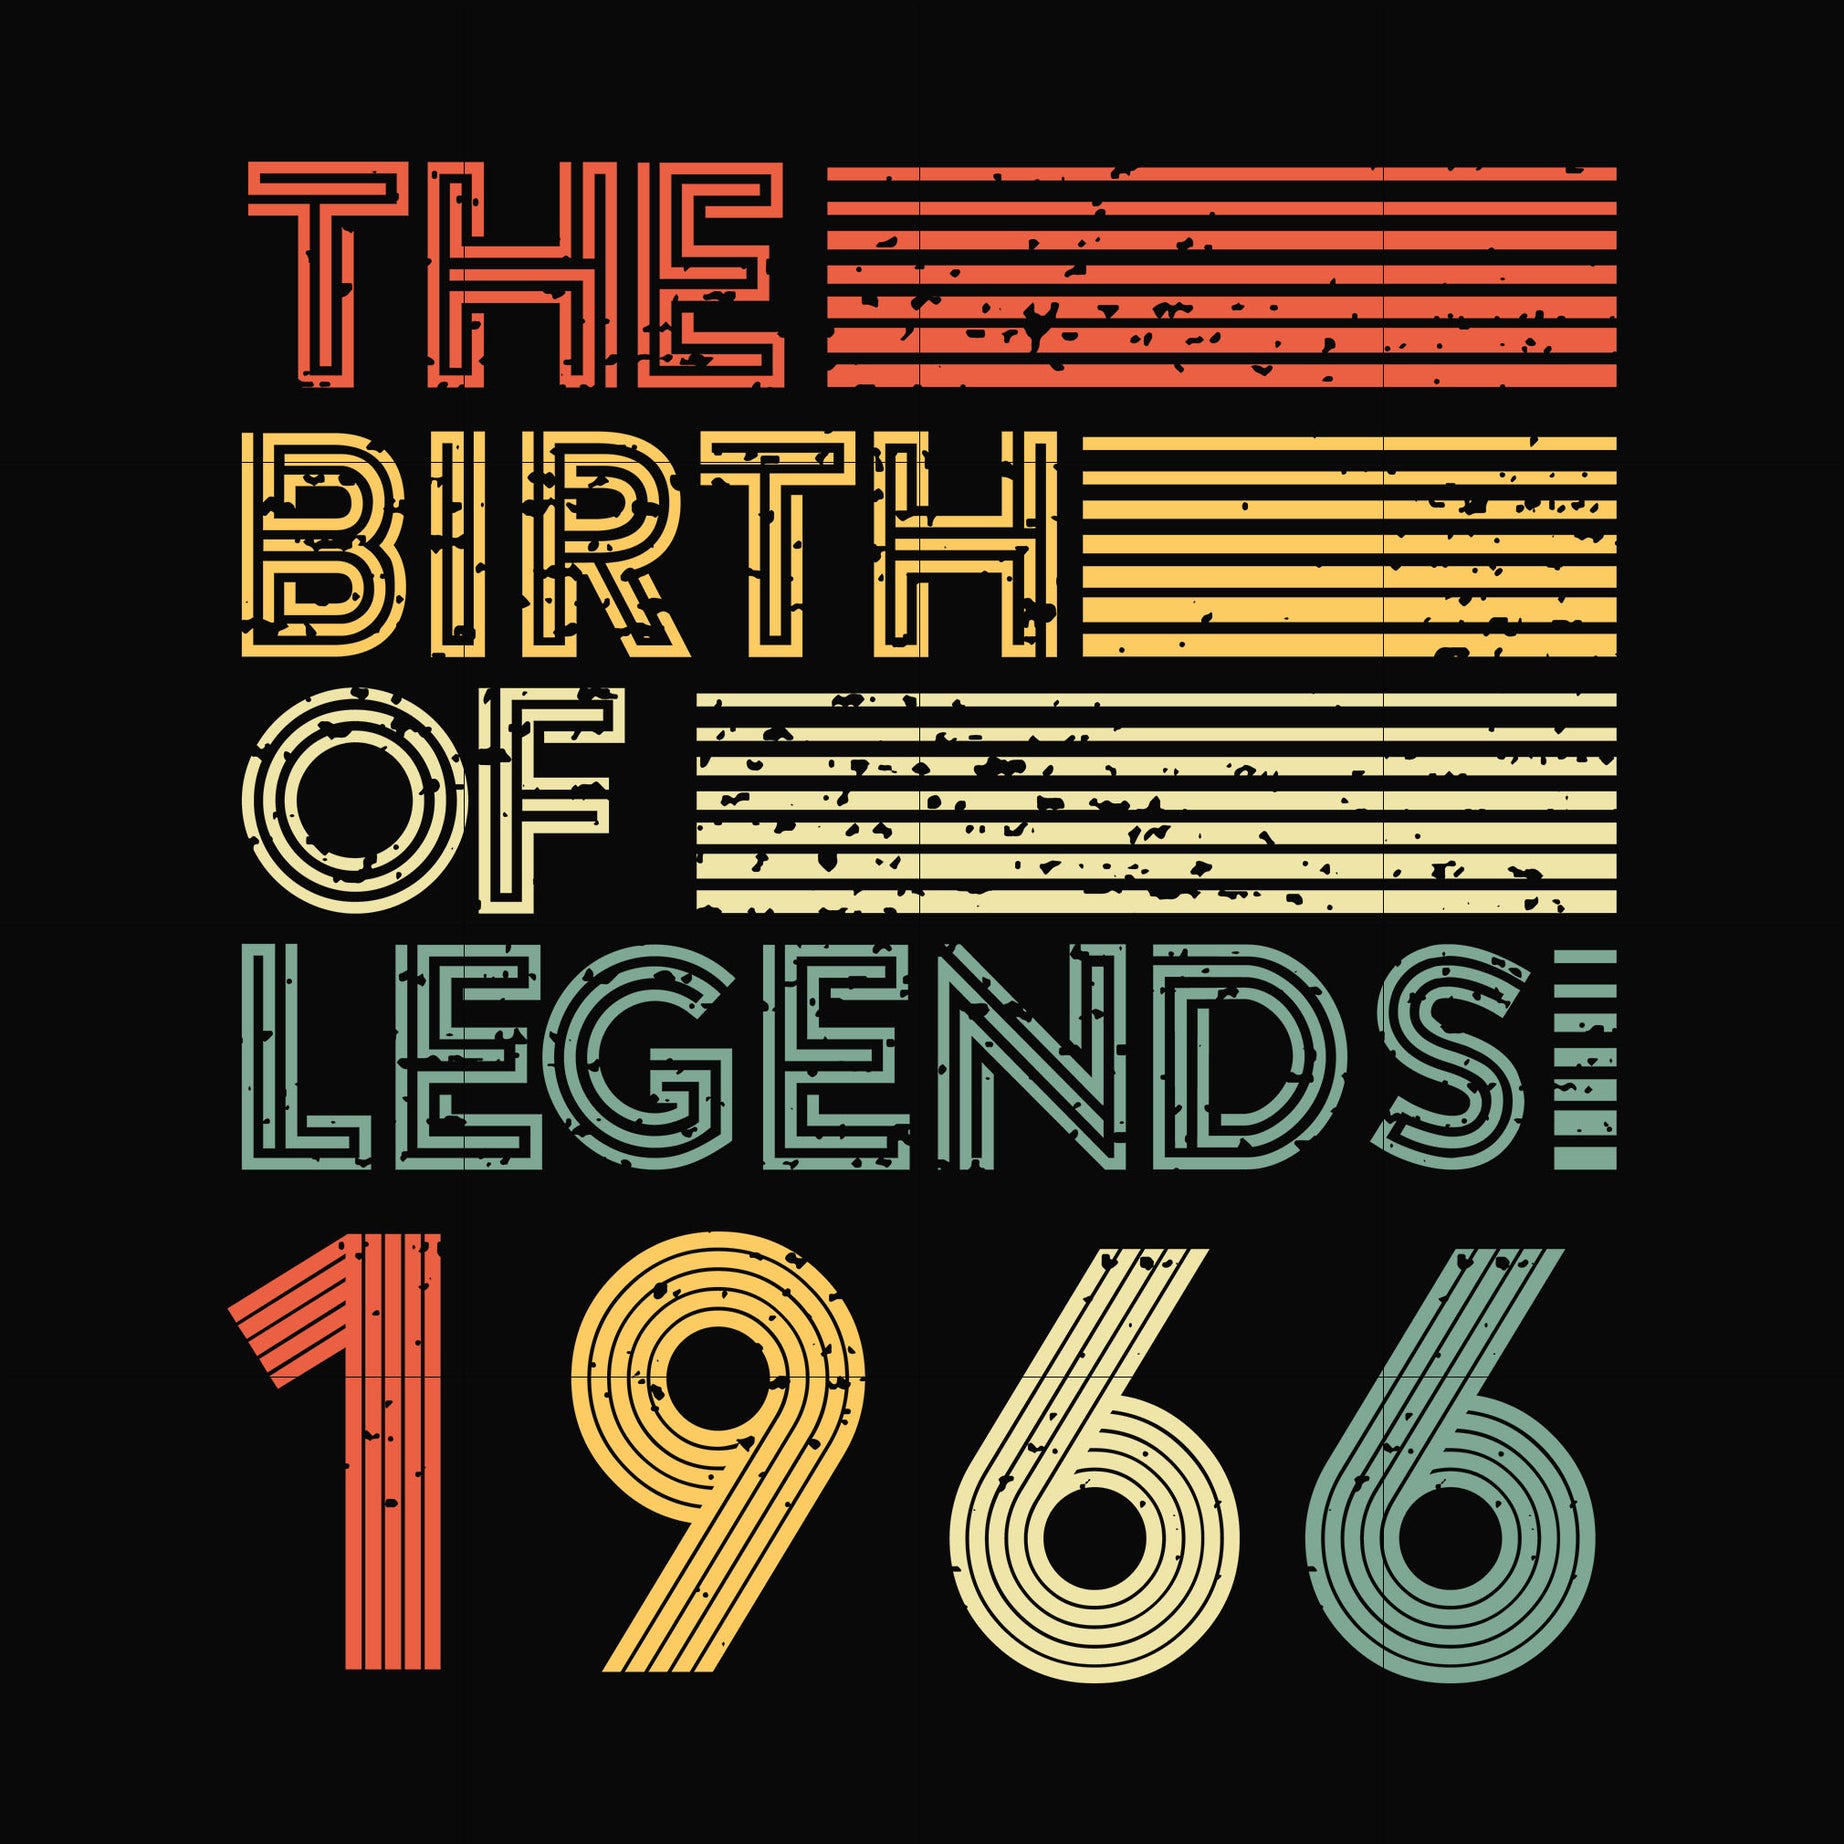 The birth of legends 1966 svg, png, dxf, eps digital file NBD0068